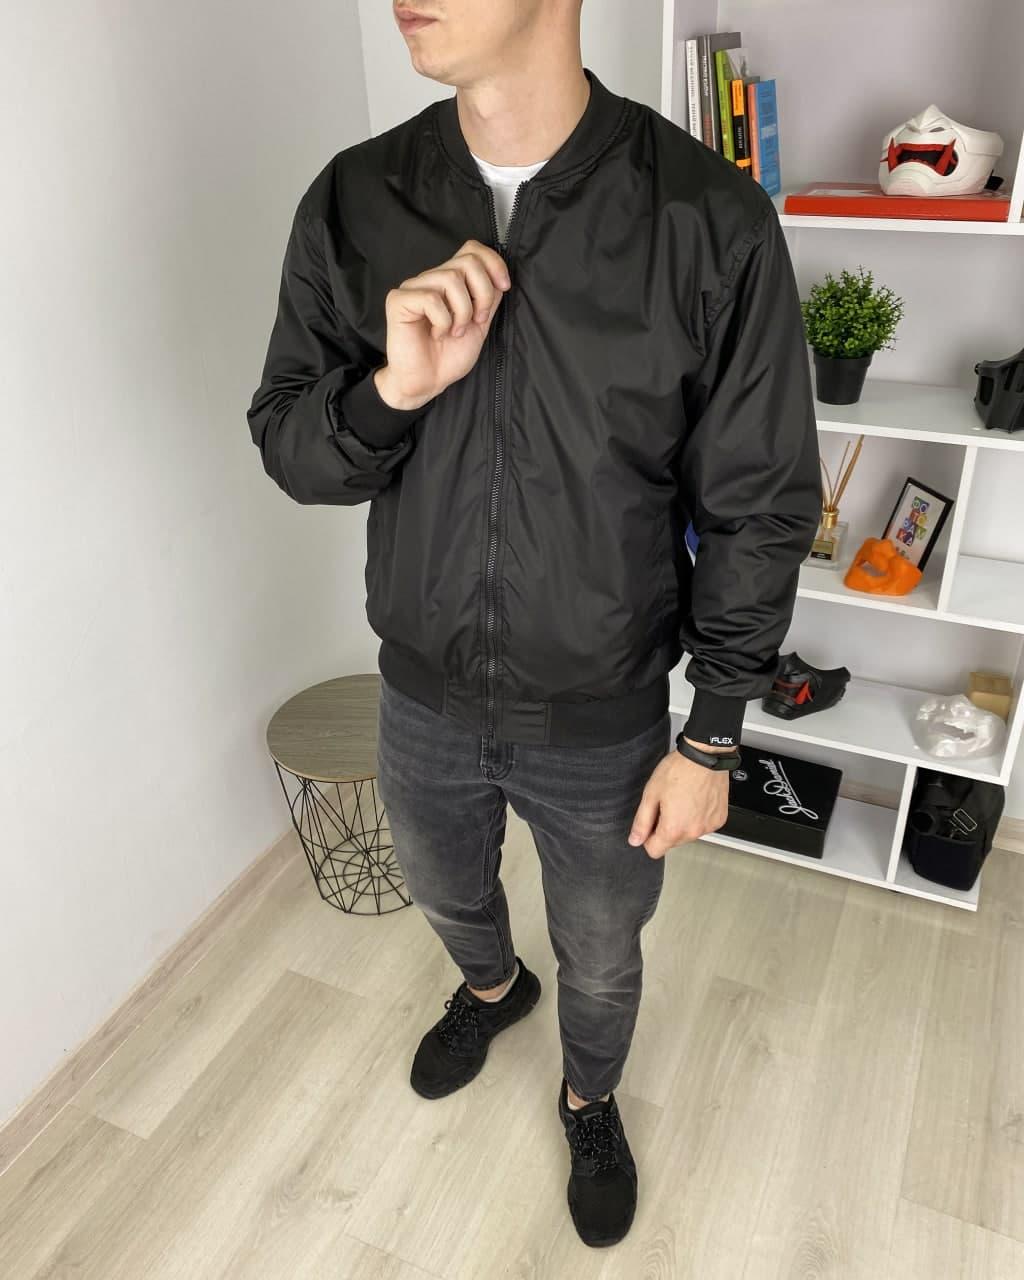 Куртка ветровка мужская черная бренд ТУР модель Флекс TURWEAR - Фото 1